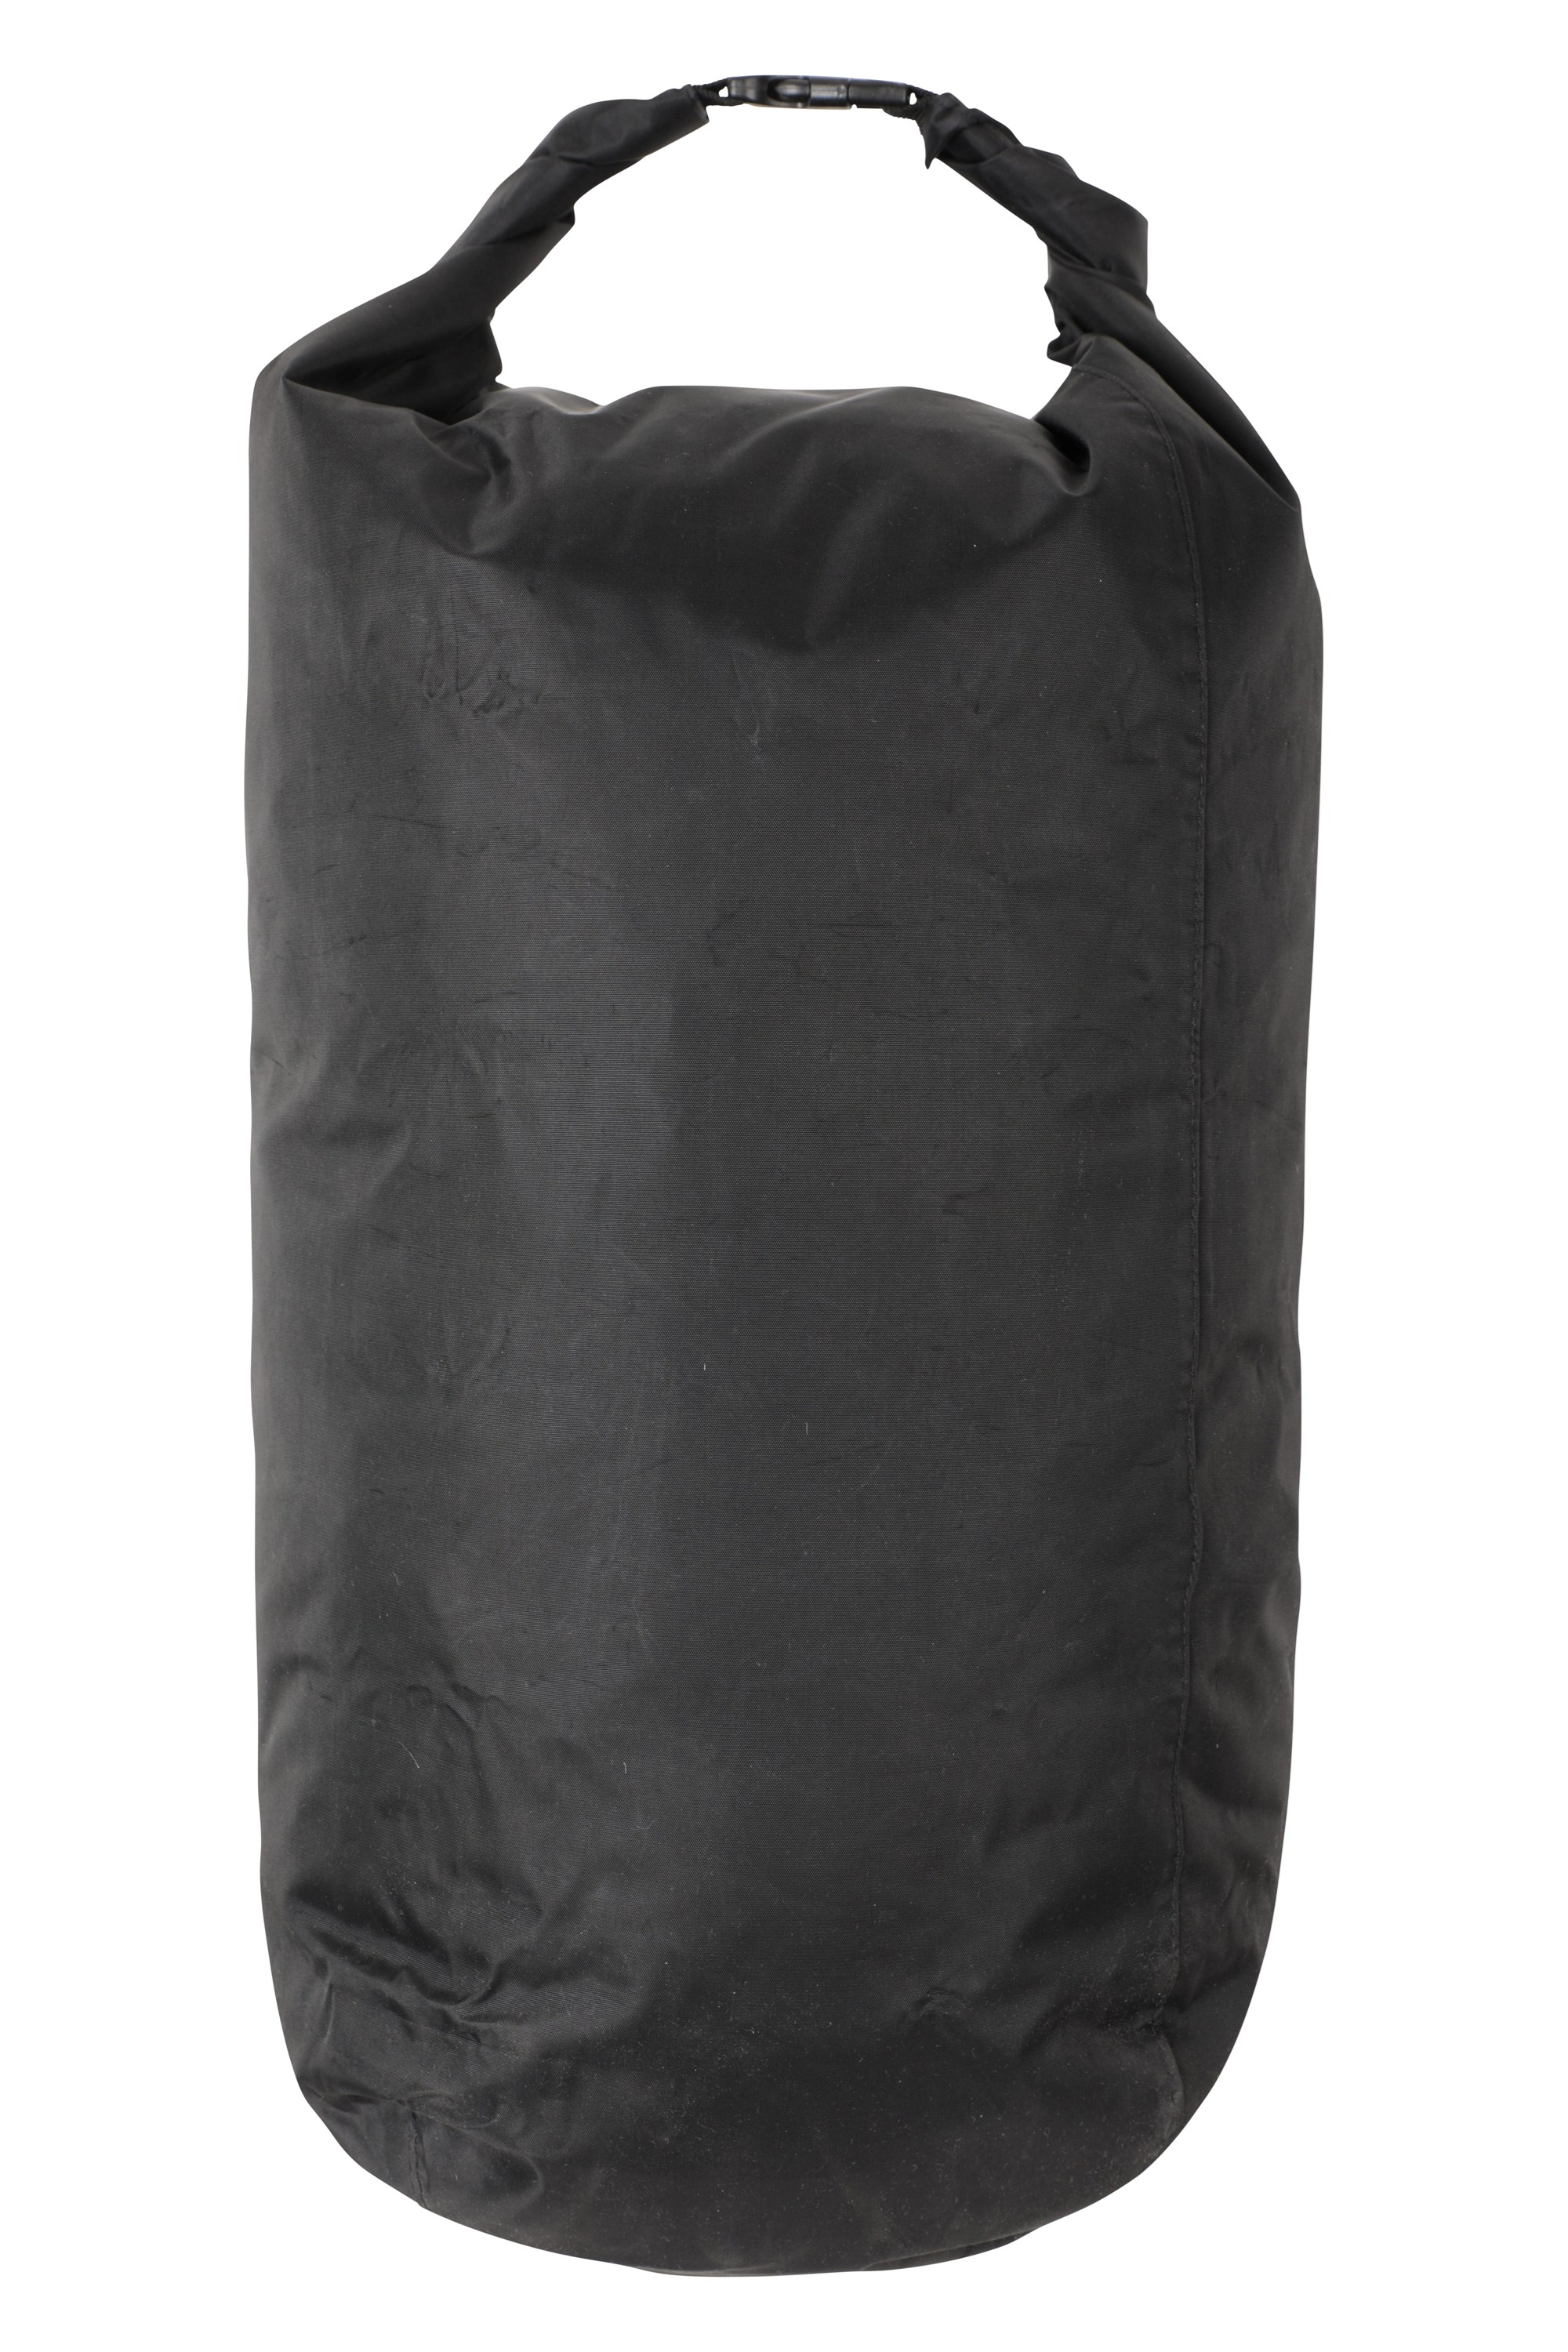 Waterproof Dry Pack Liner - Medium 40L - Black